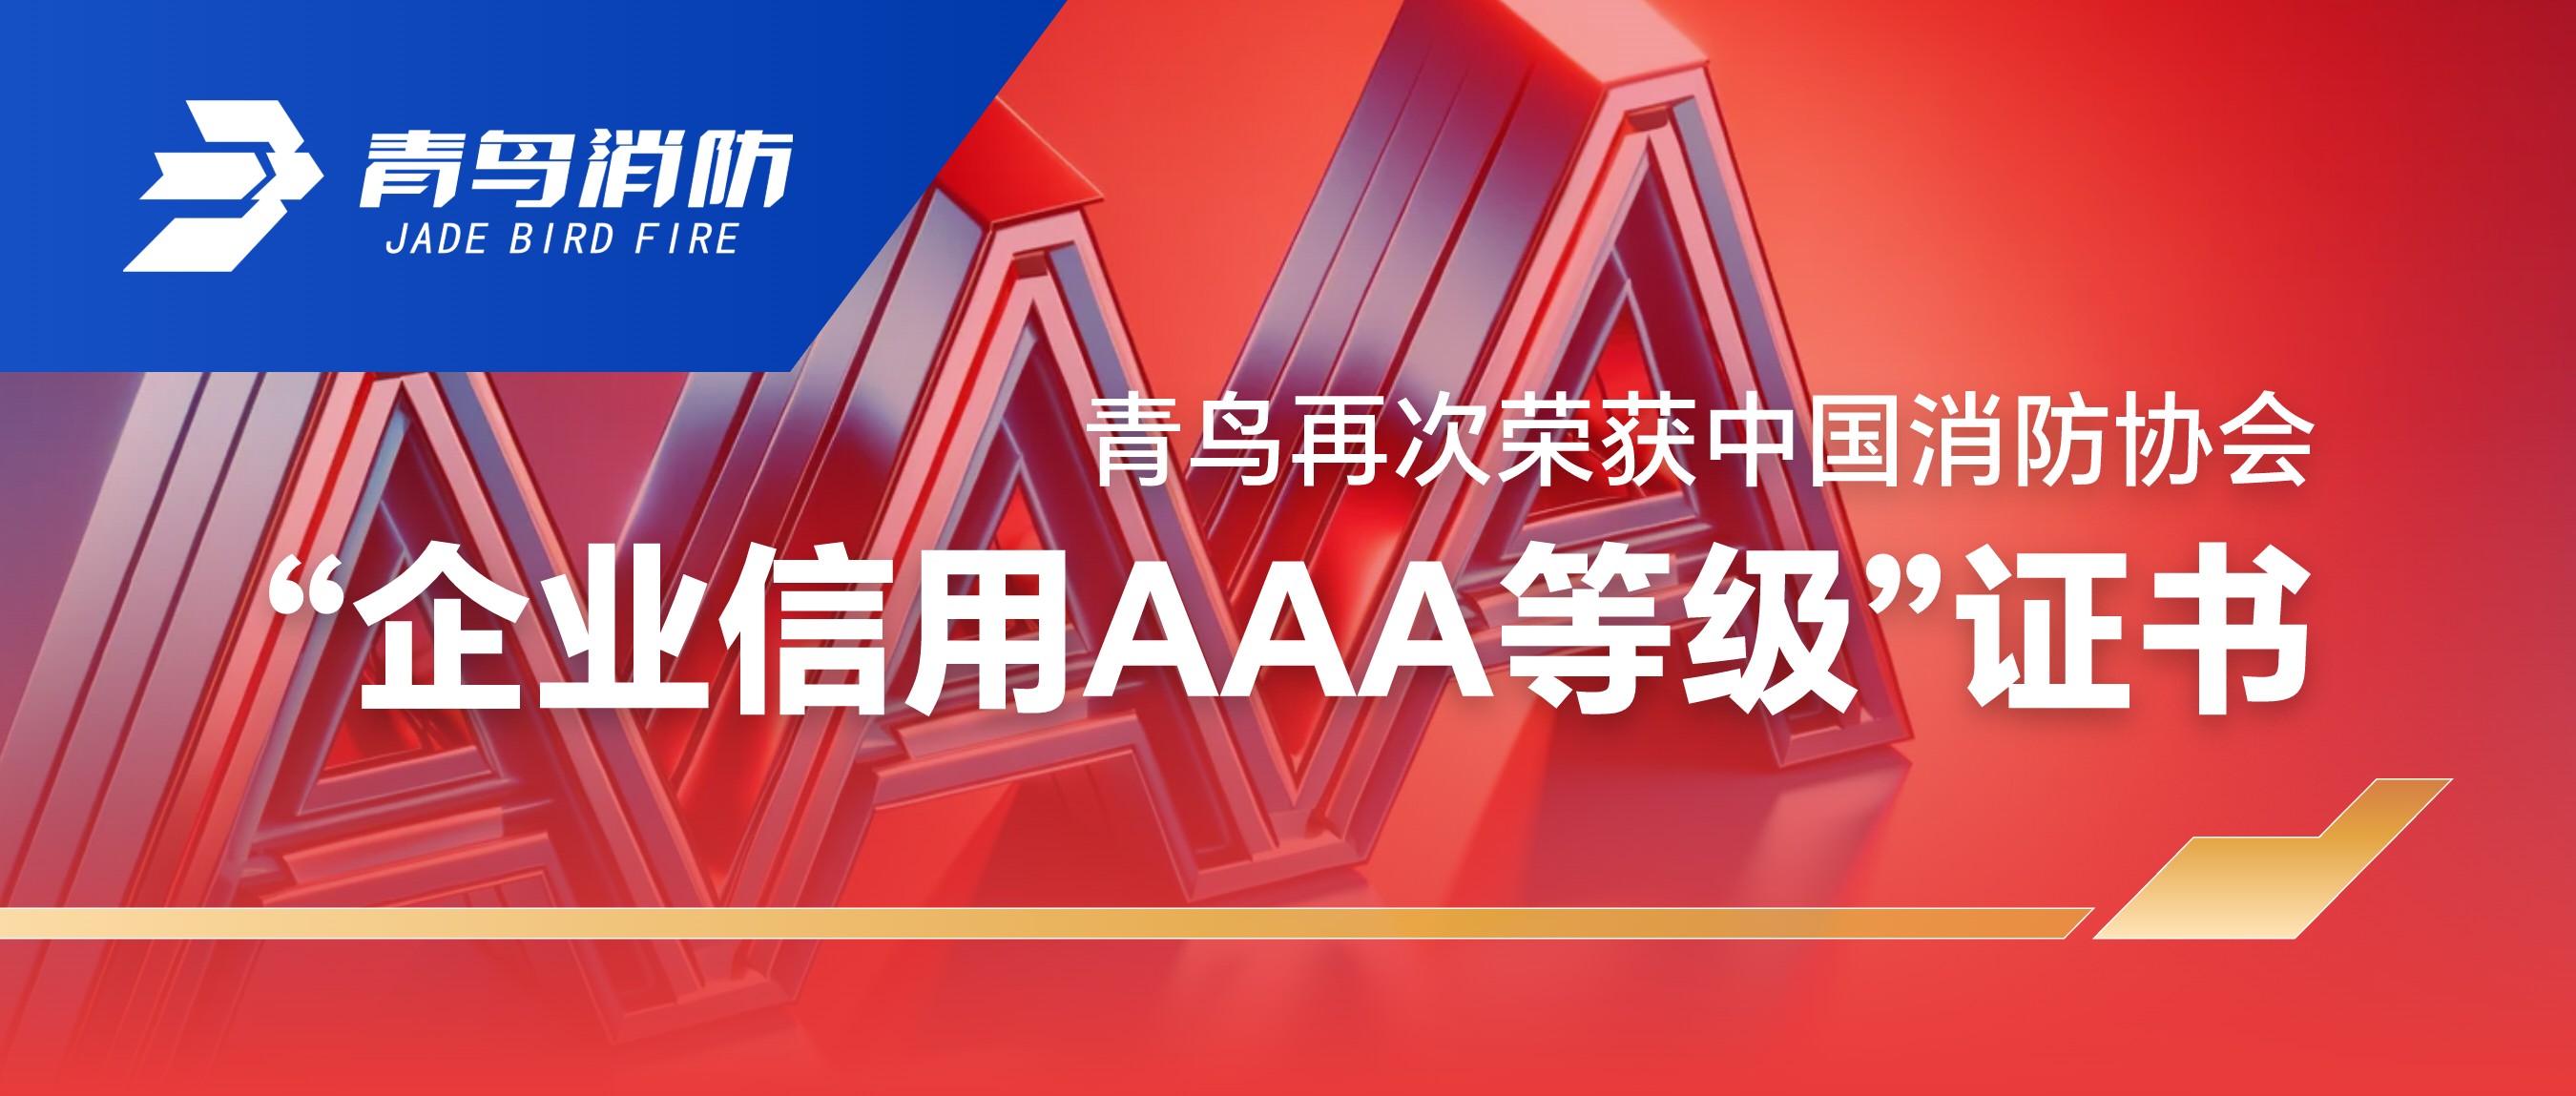 中欧体育
再次荣获中国消防协会“企业信用AAA等级”证书